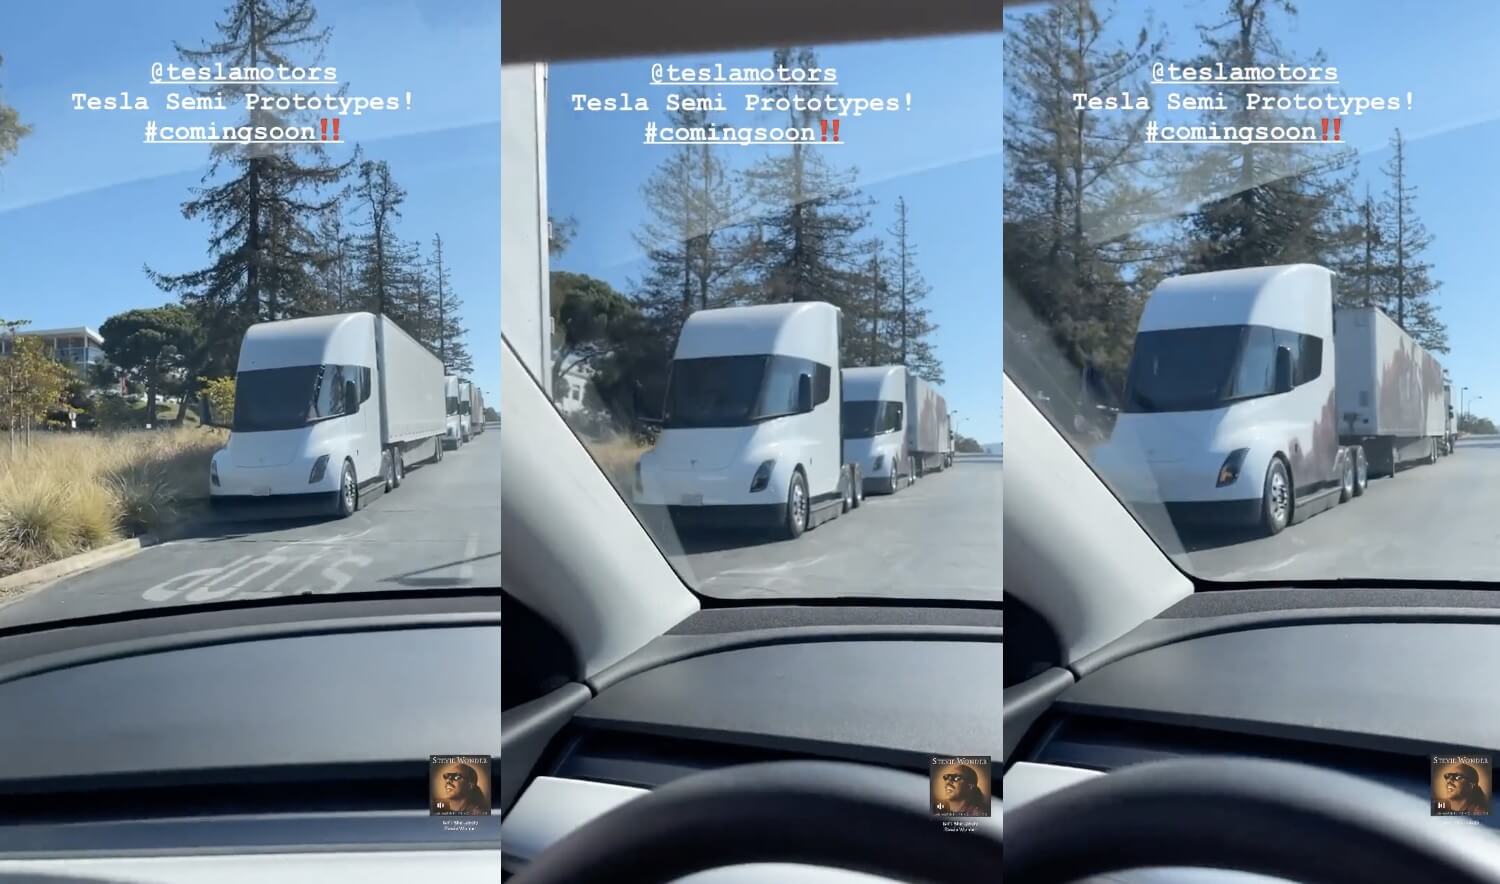 Los avistamientos de Tesla Semi son cada vez más comunes